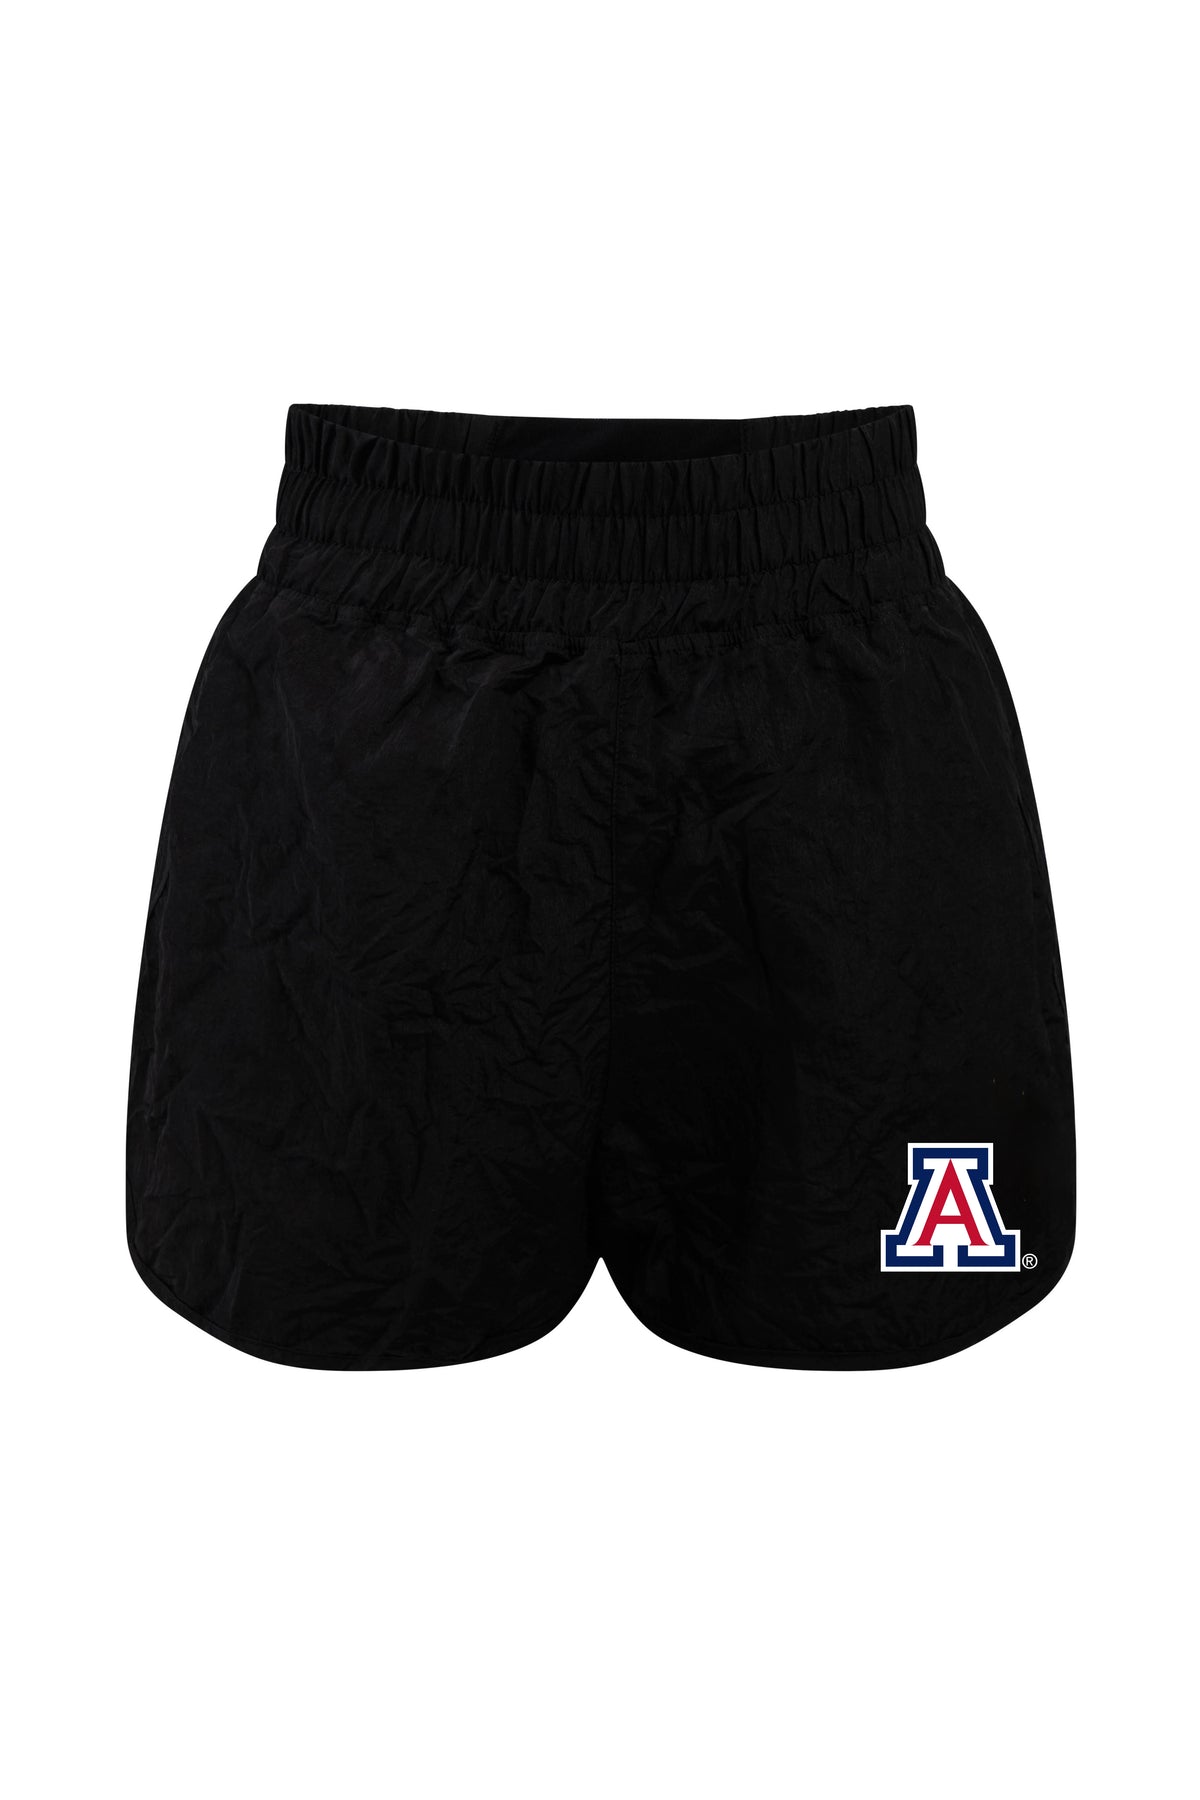 University of Arizona Boxer Short